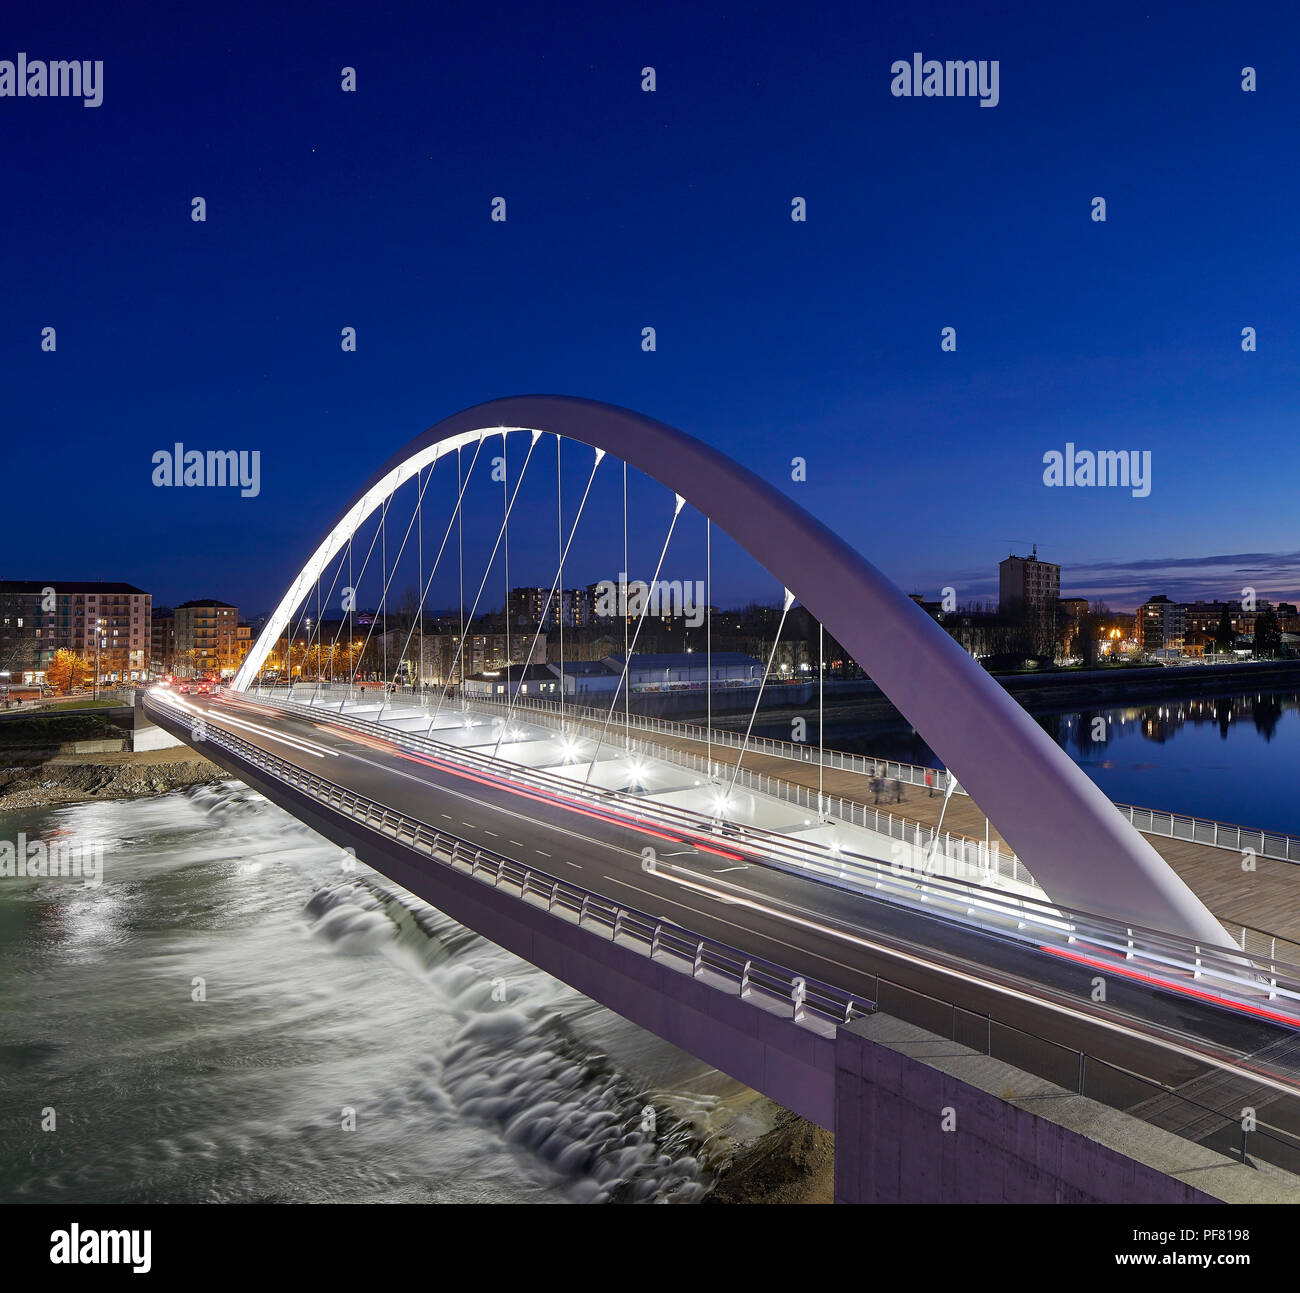 Blick auf die Bridge bei Nacht. Cittadella Brücke, Alessandria, Italien. Architekt: Richard Meier und Partner, 2017. Stockfoto